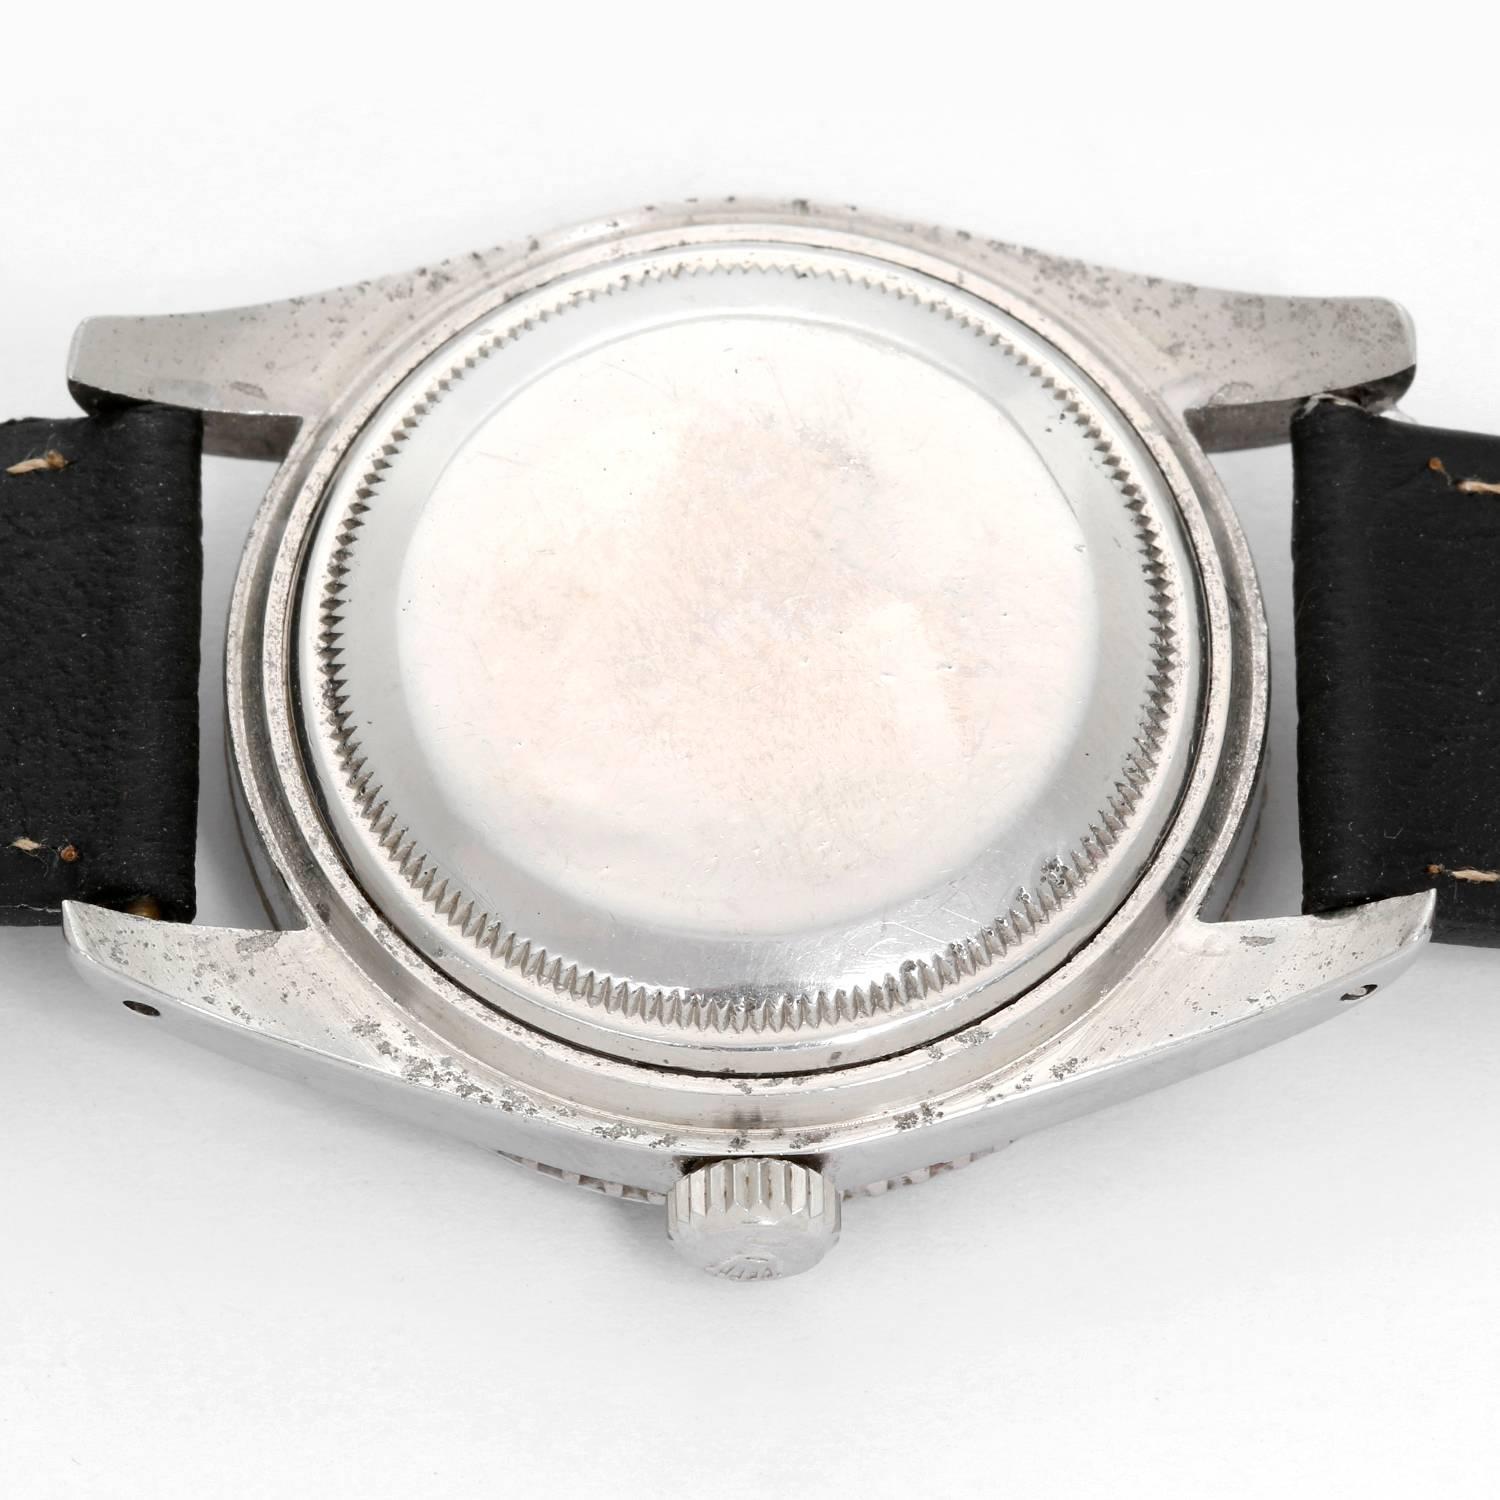 Rolex Stainless Steel James Bond Submariner Self Winding Wristwatch Ref 6536/1 2